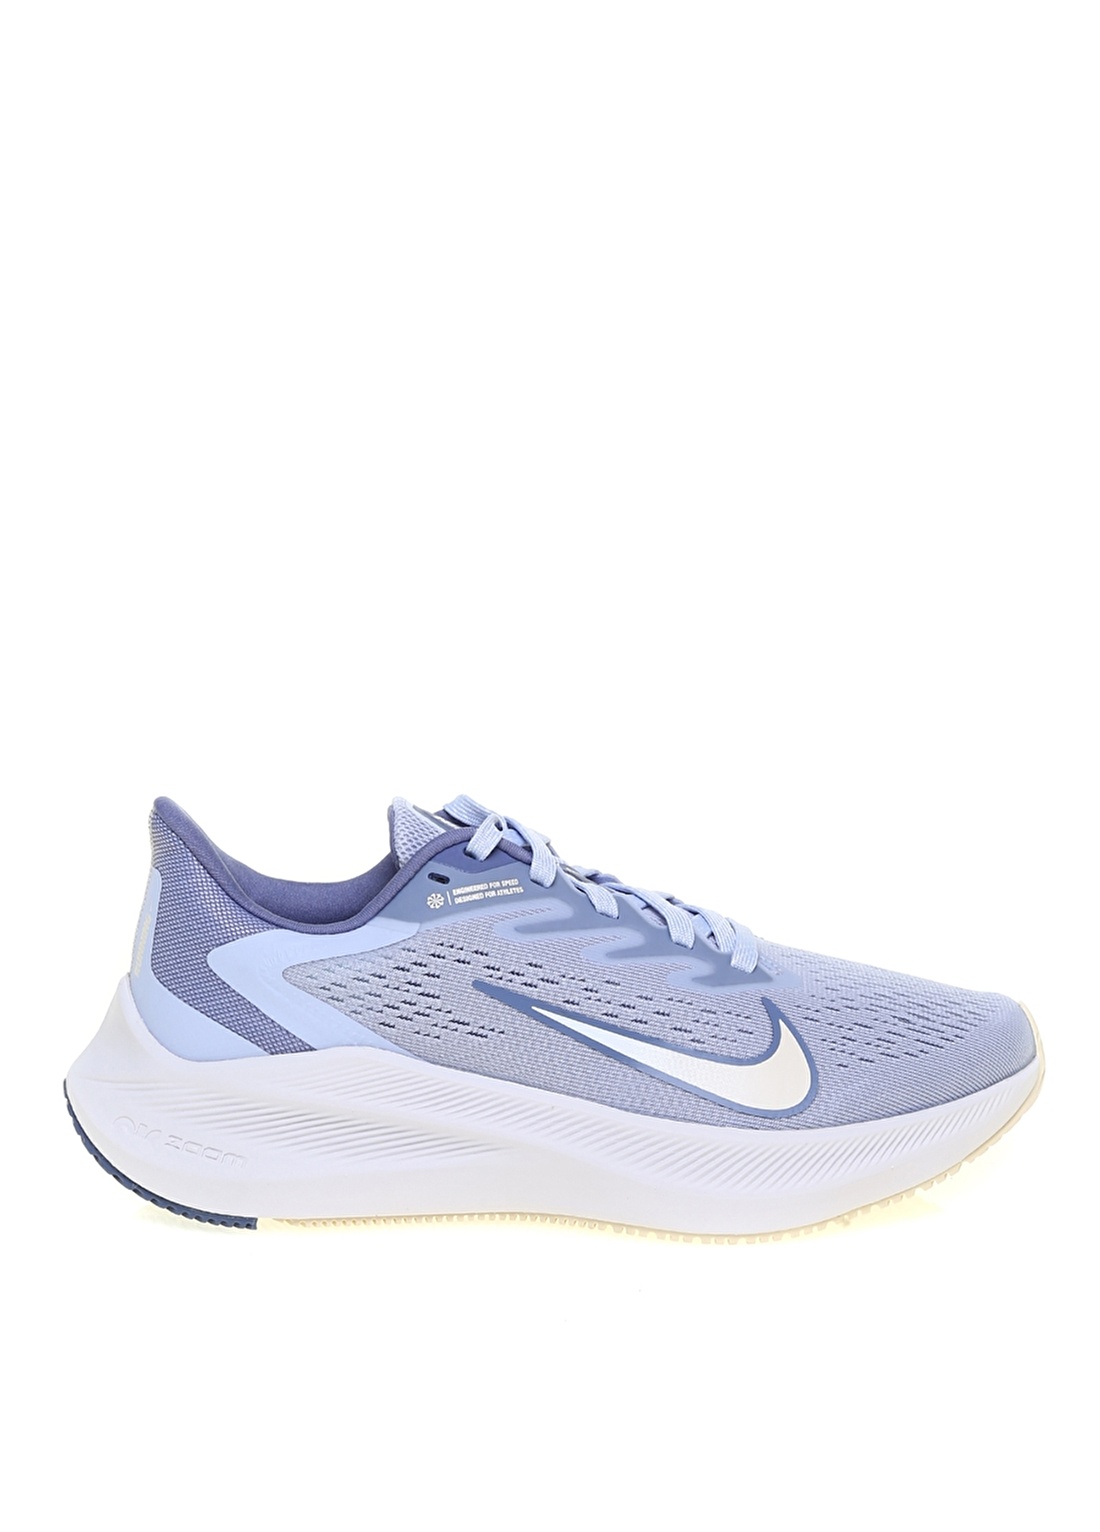 Nike CJ0302-007 Zoom Winflo 7 Mavi Kadın Koşu Ayakkabısı